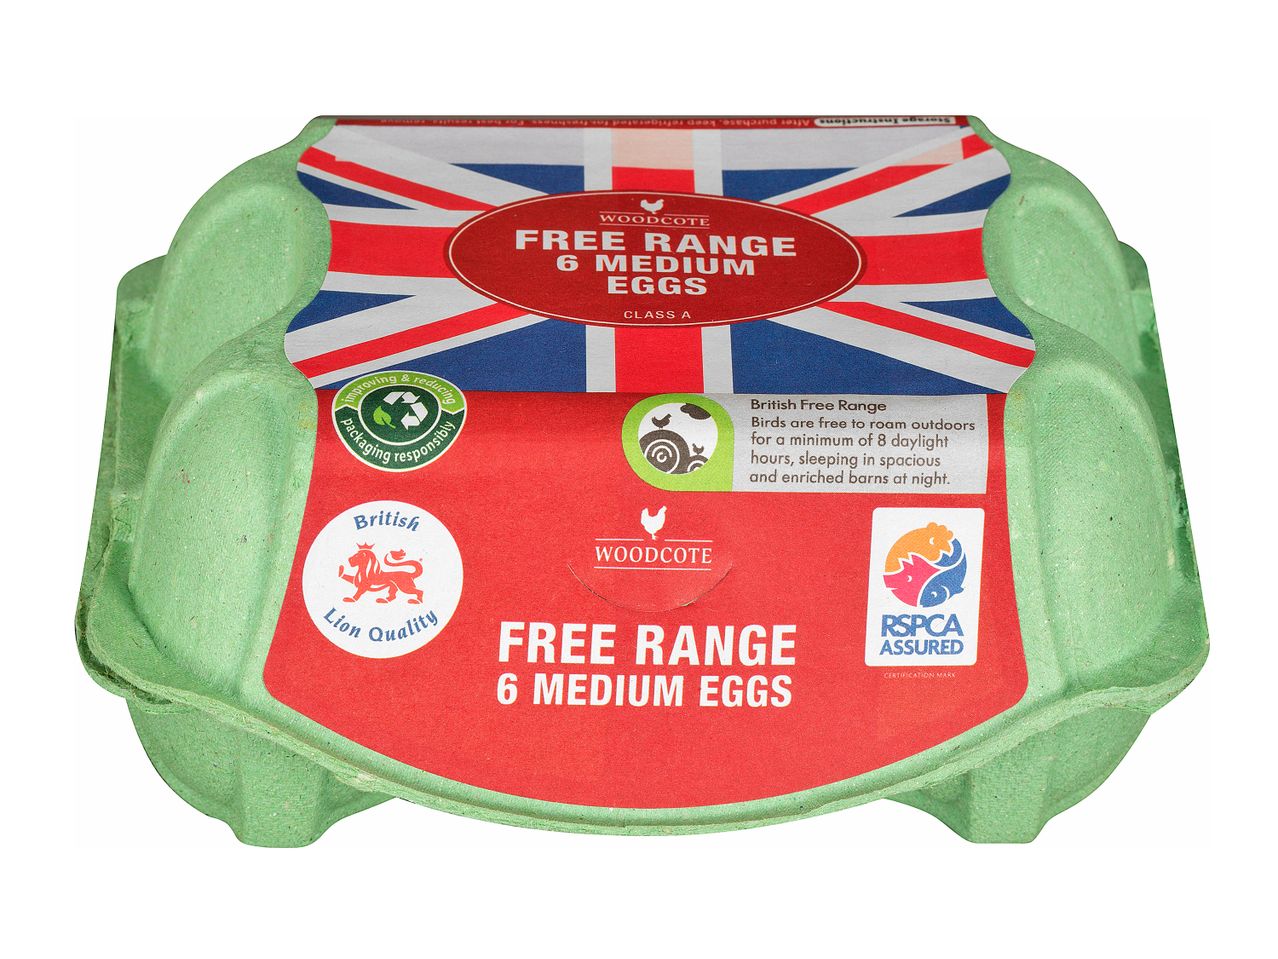 Go to full screen view: Woodcote 6 Medium Free Range British Eggs - Image 1